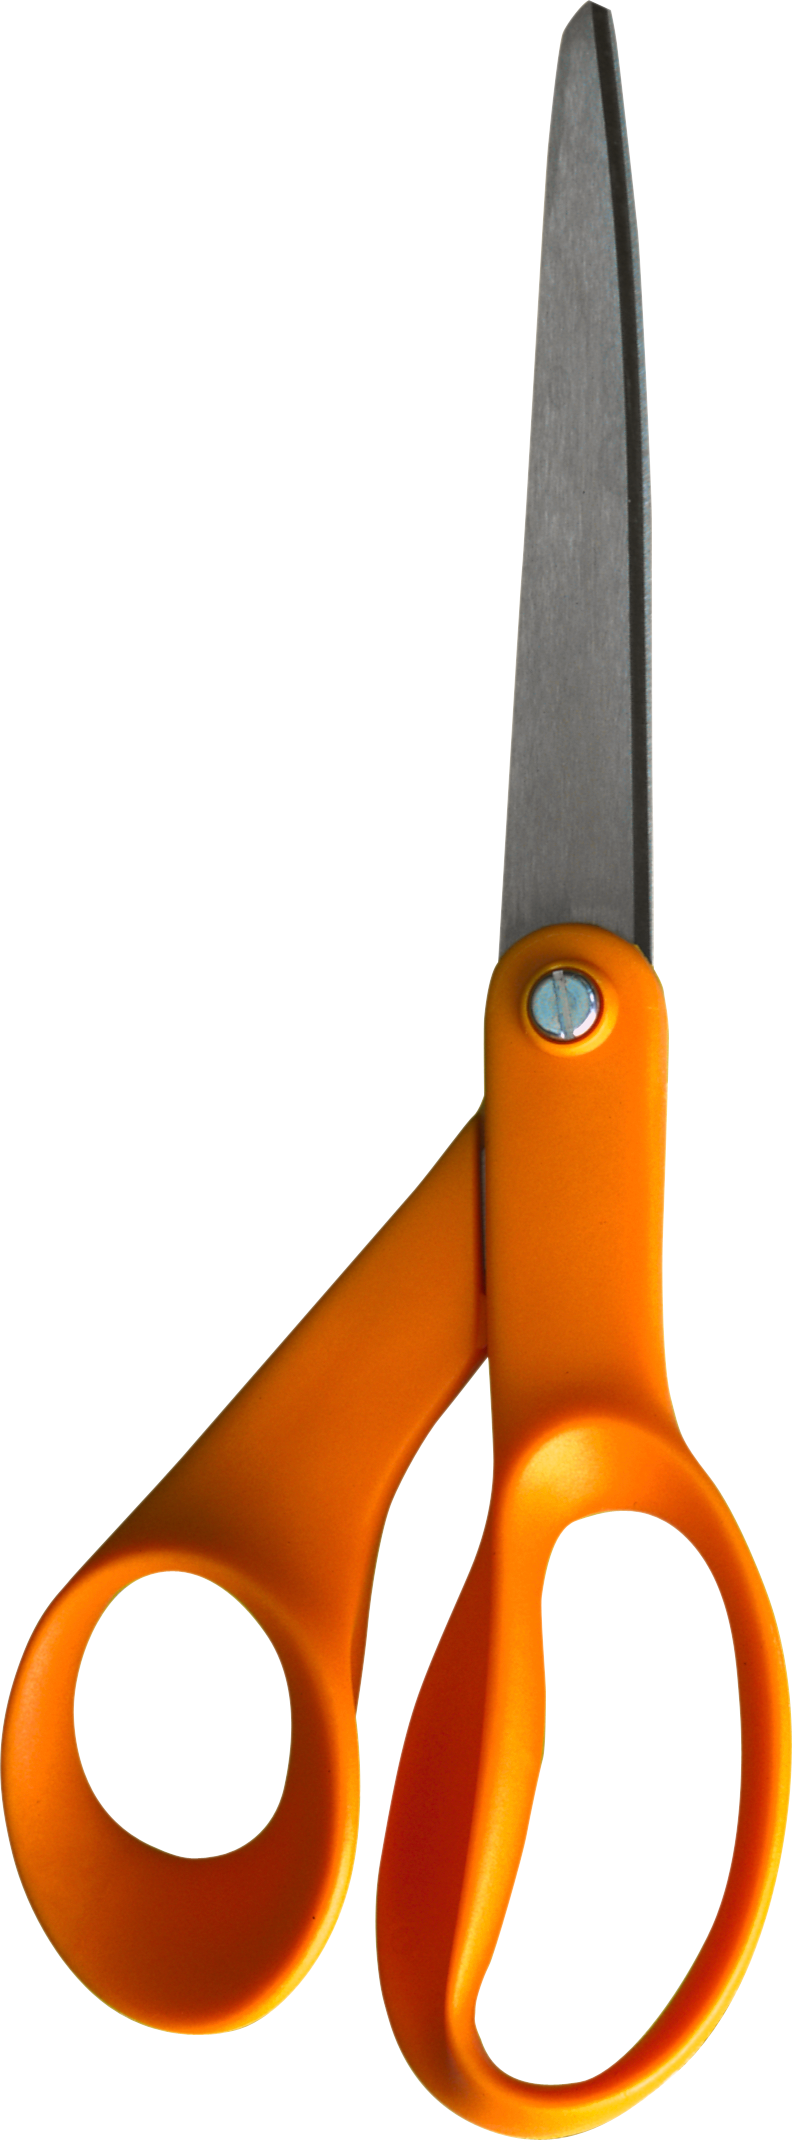 Pomarańczowe nożyczki